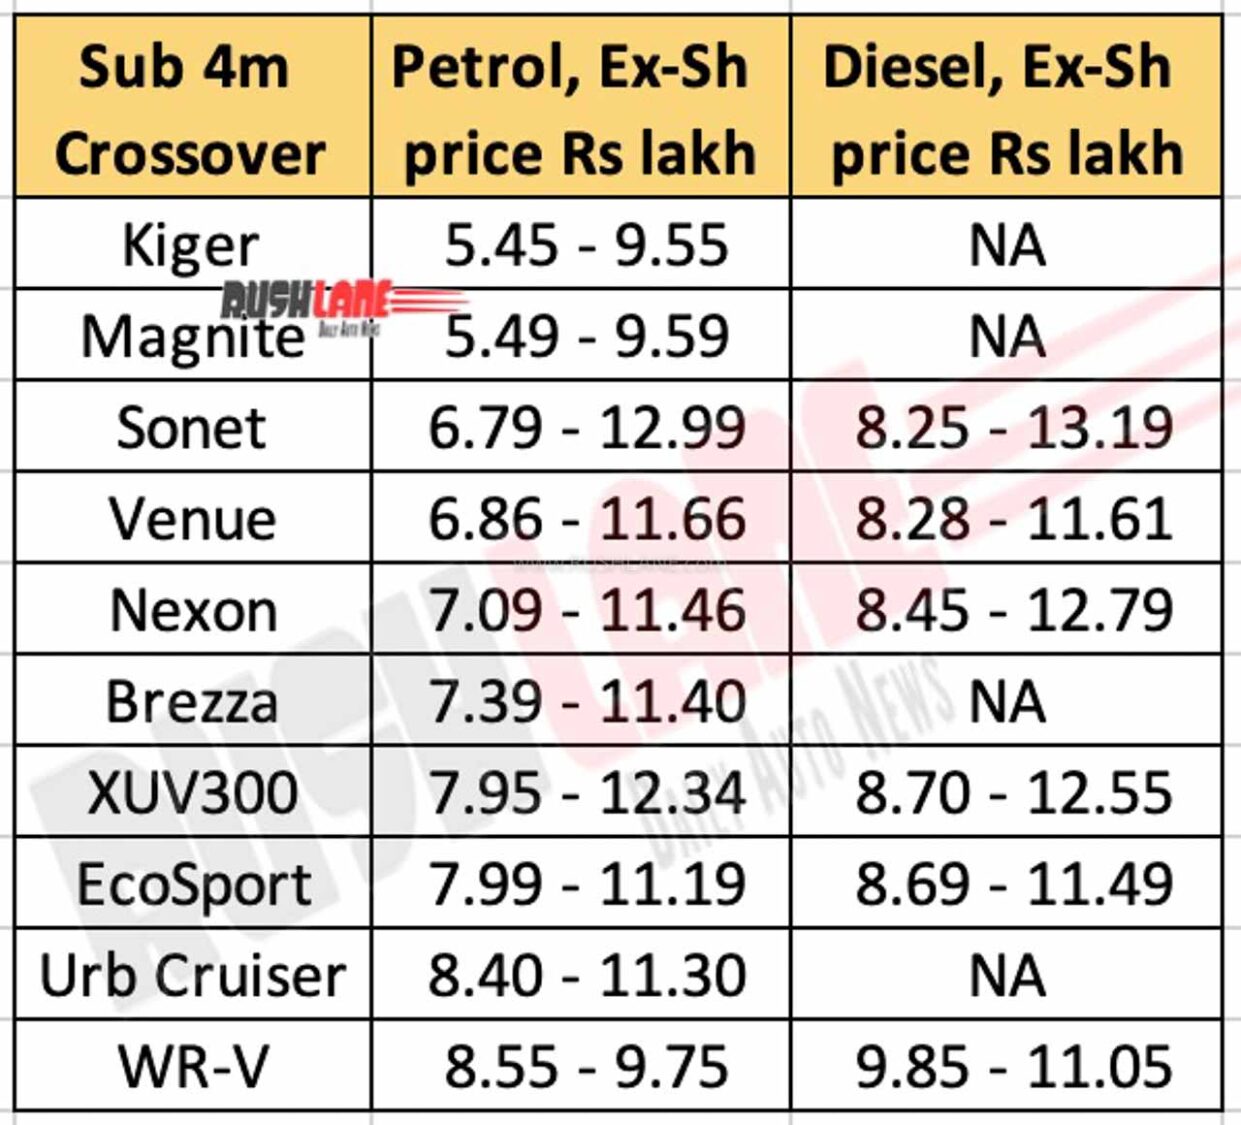 Renault Kiger vs Rivals - Price Range